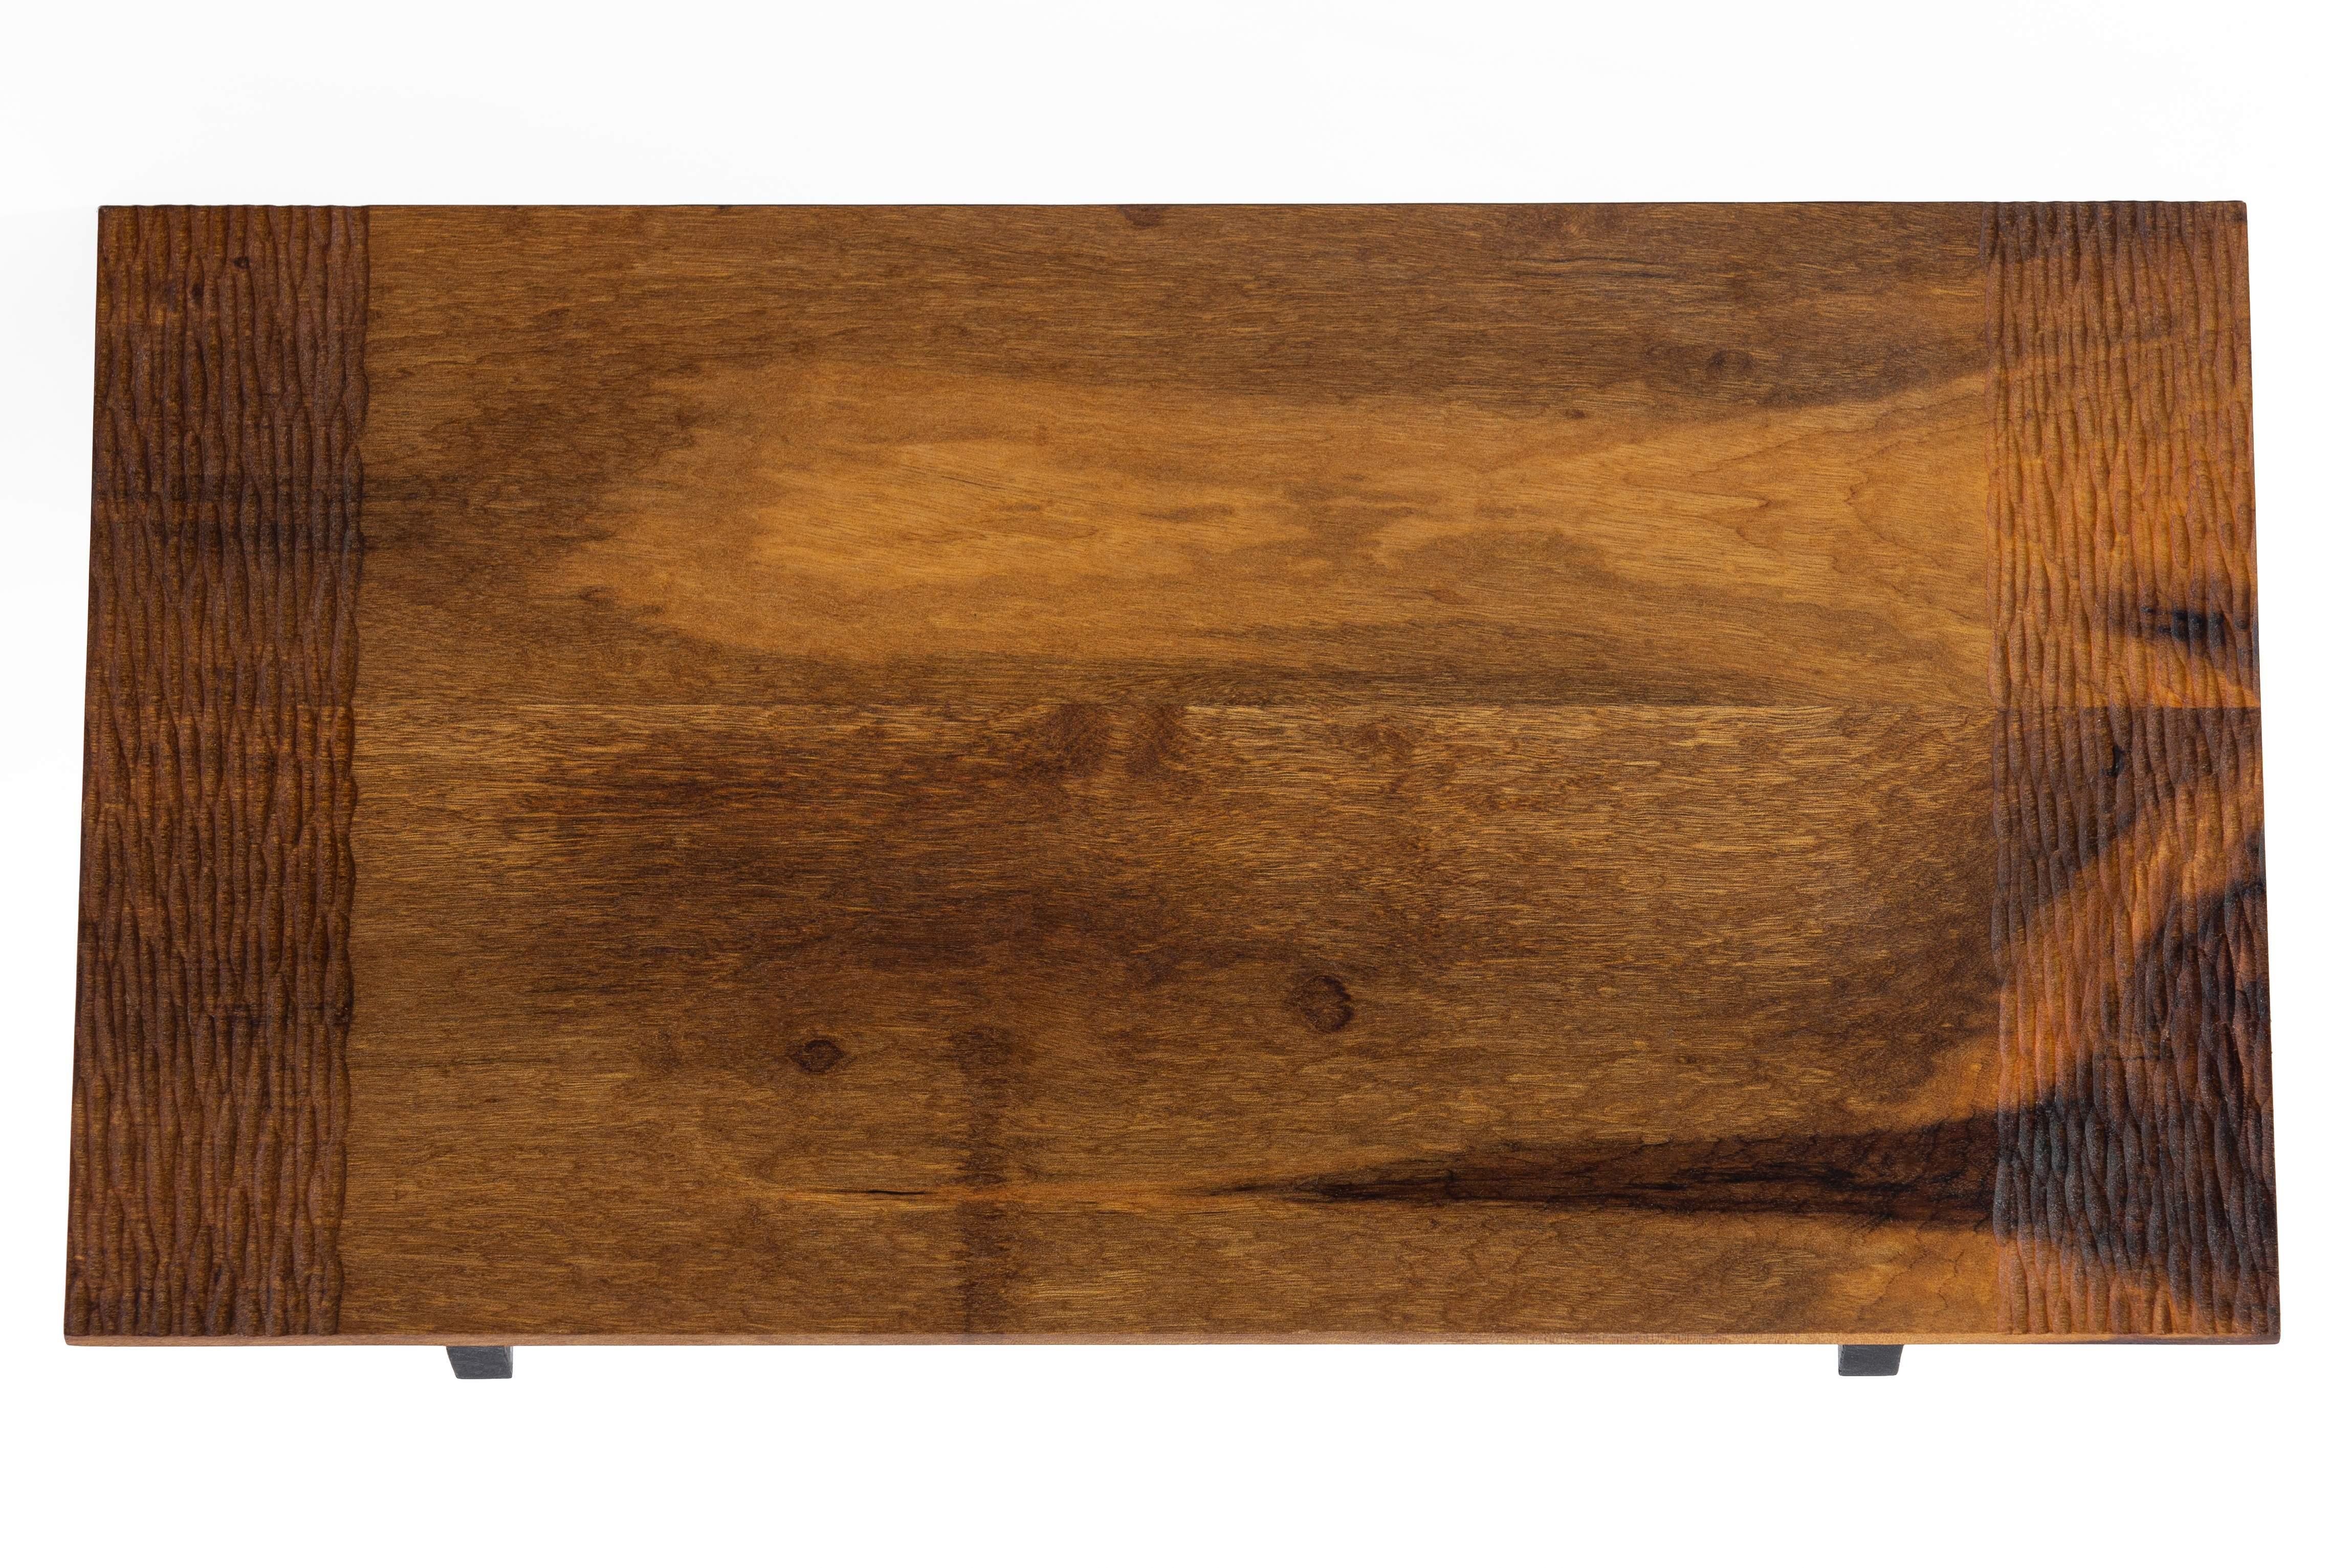 Das Mundaú-Tablett aus Imbuia-Holz ist eine ausgezeichnete Wahl, um es auf einer Anrichte oder einem Buffet zu platzieren, in der gemütlichen Kaffee-Ecke oder um zu servieren, was immer Sie wünschen.

Dieses fein gearbeitete Stück wurde mit